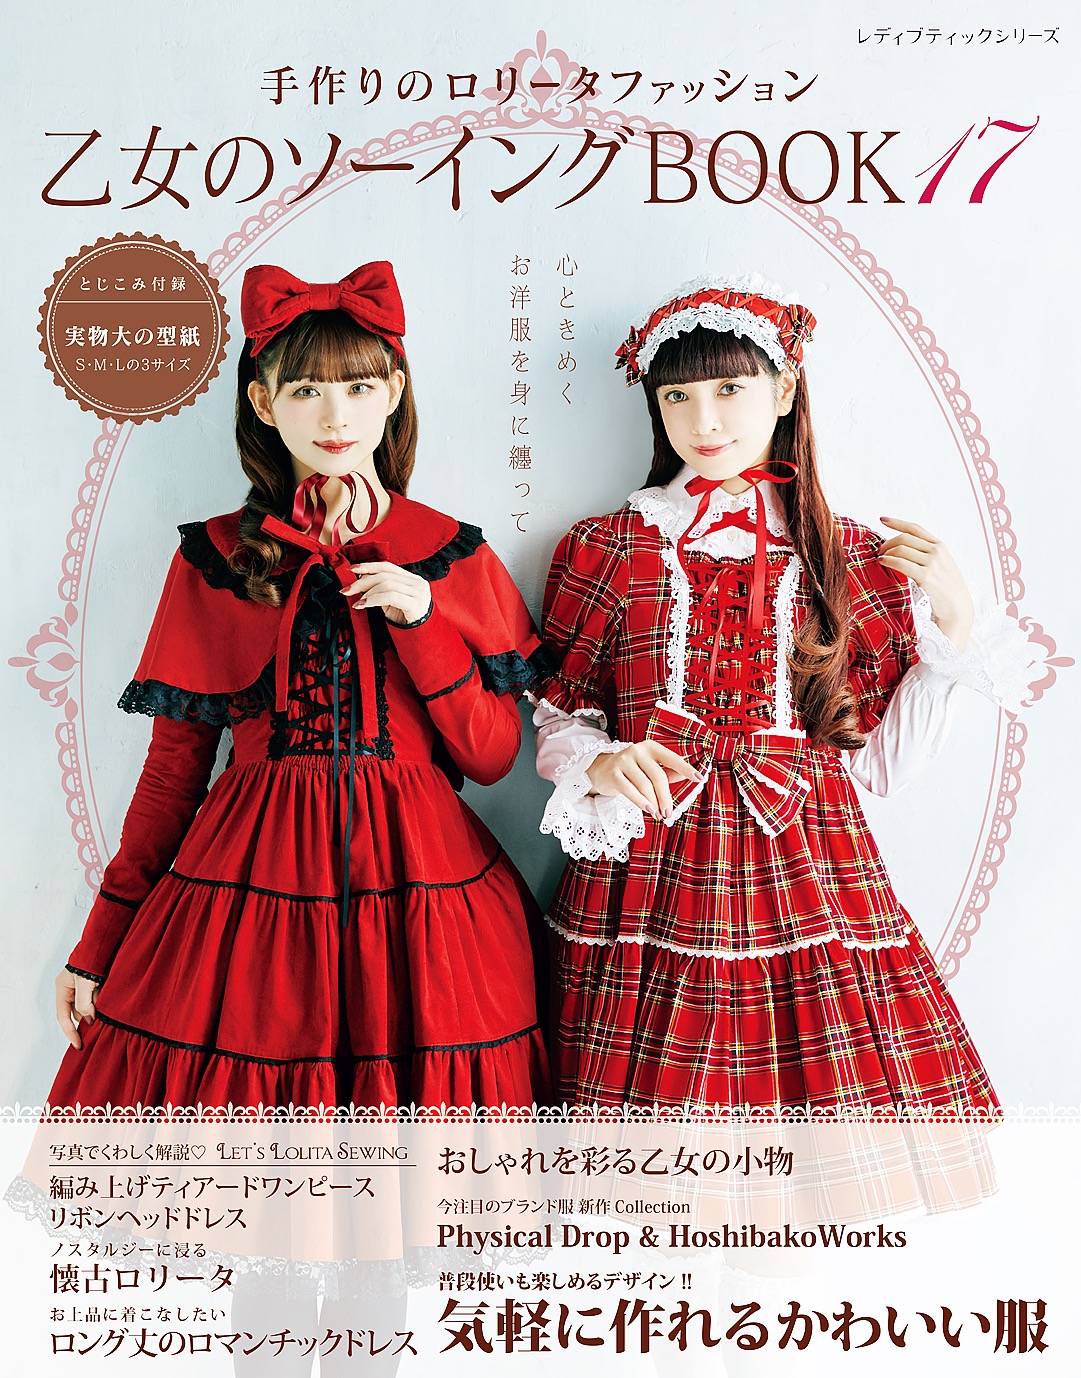 乙女のソーイングBOOK17(書籍) - 電子書籍 | U-NEXT 初回600円分無料